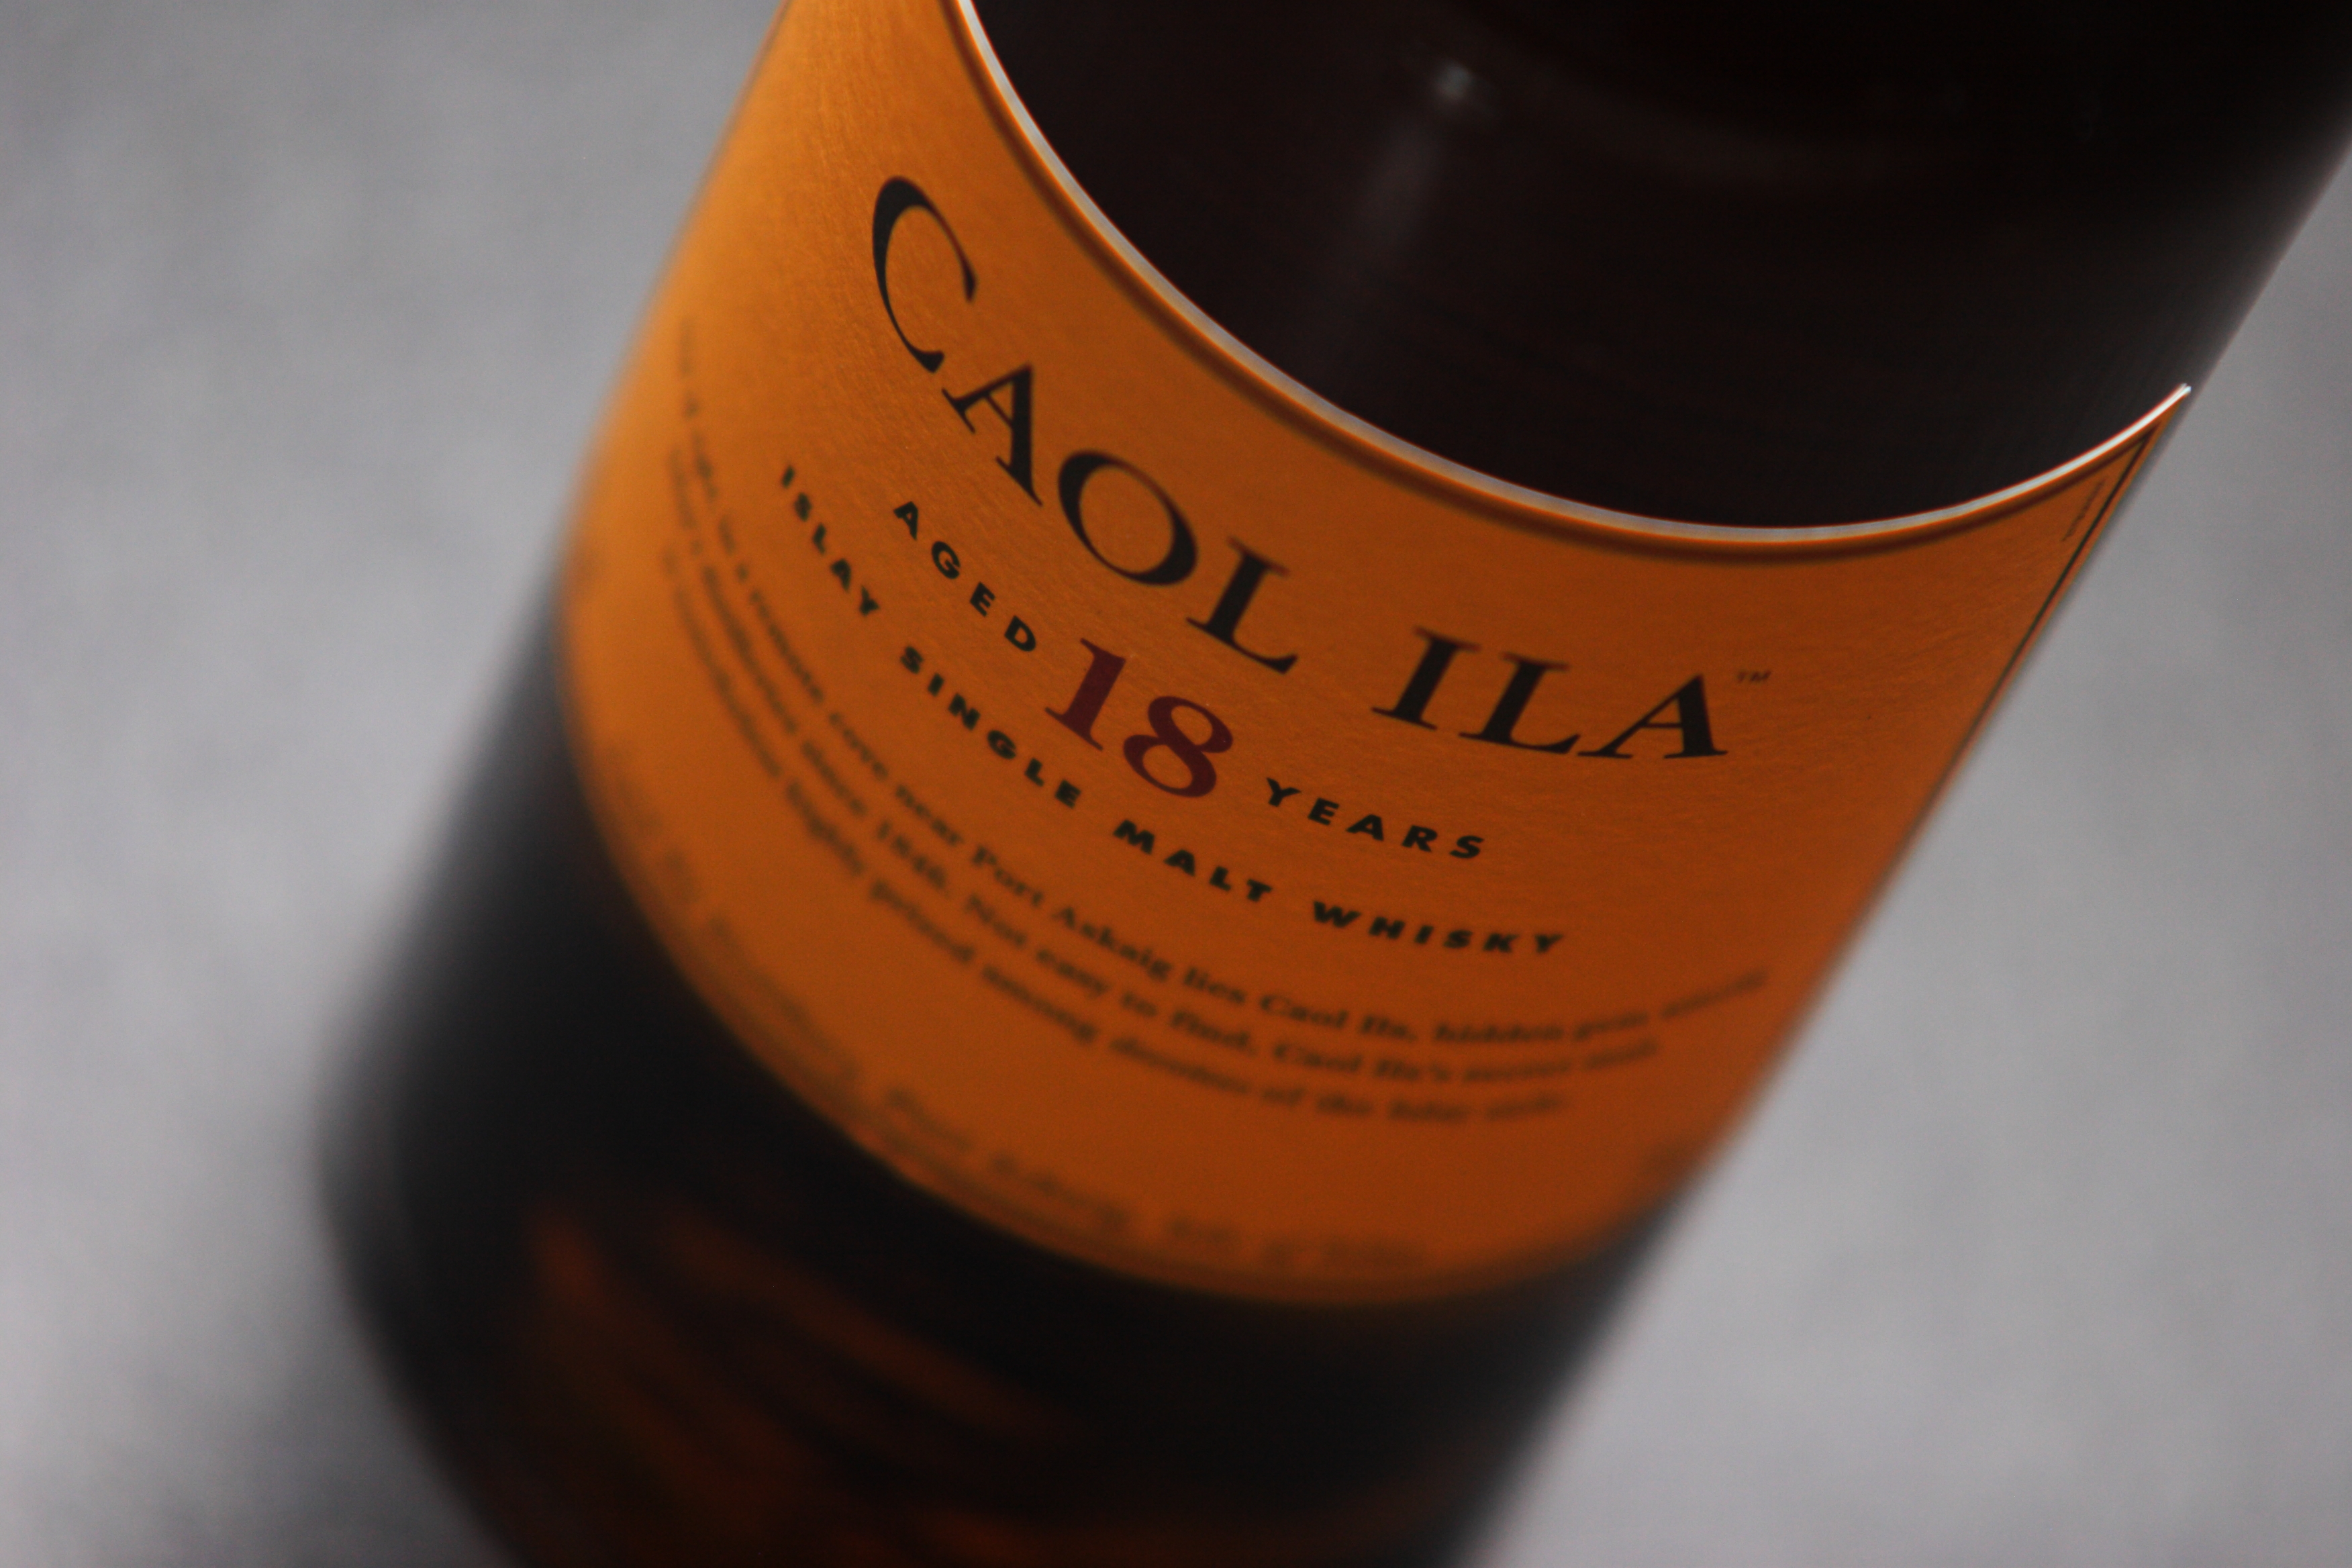 Caol Ila Malt Scotch Single Whisky 3504x2336